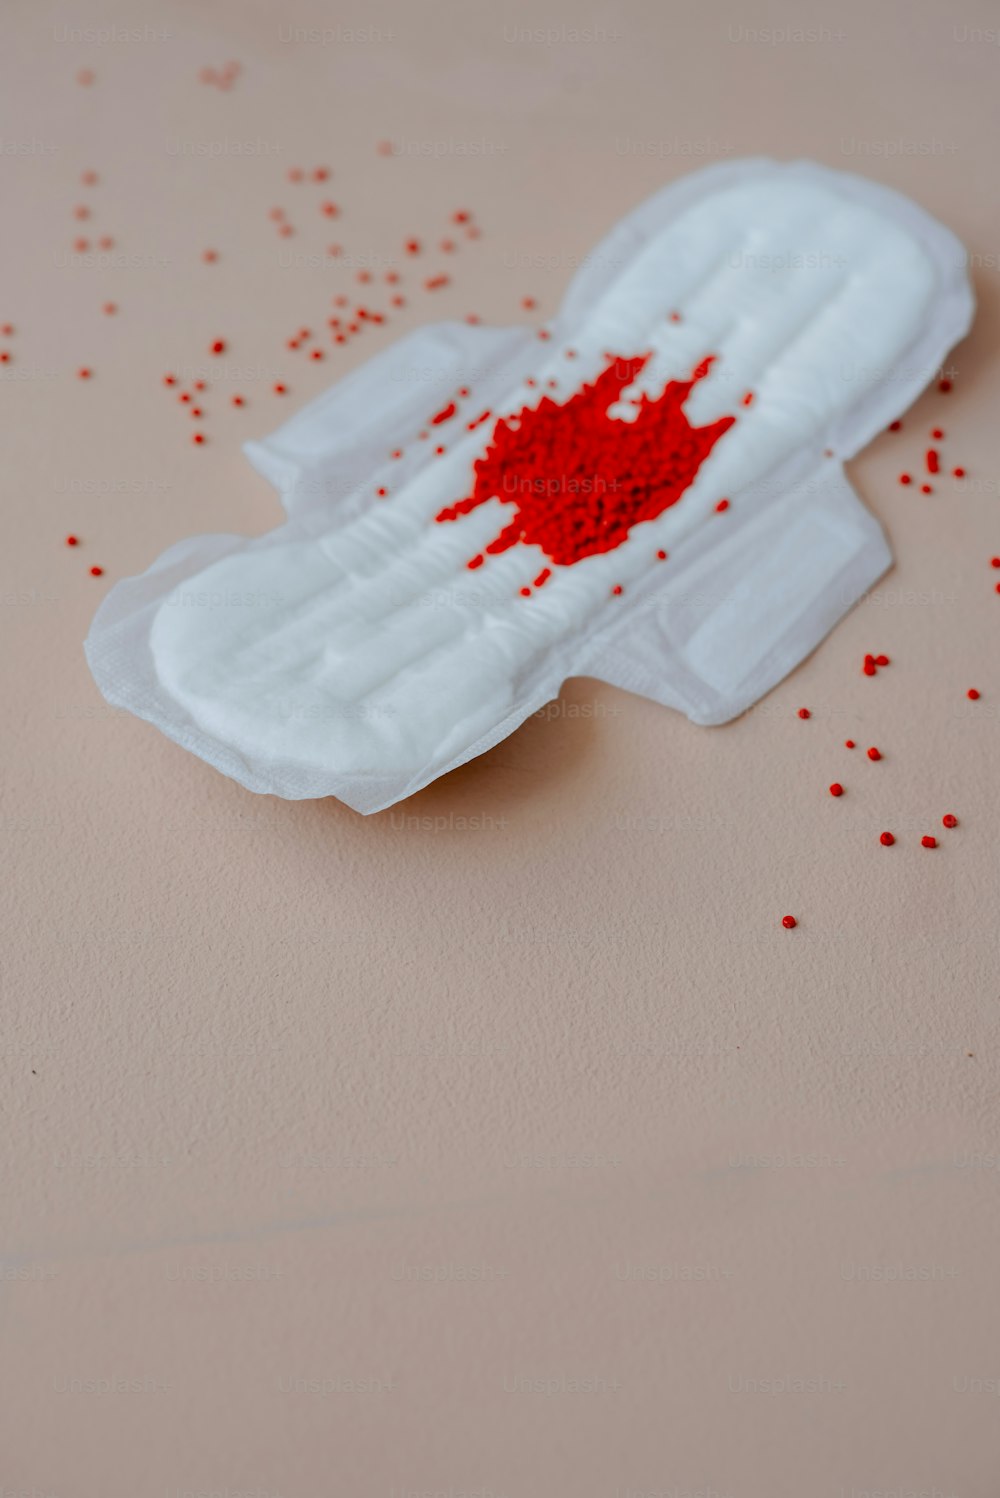 ein weißes Blatt Papier mit roten Streuseln darauf